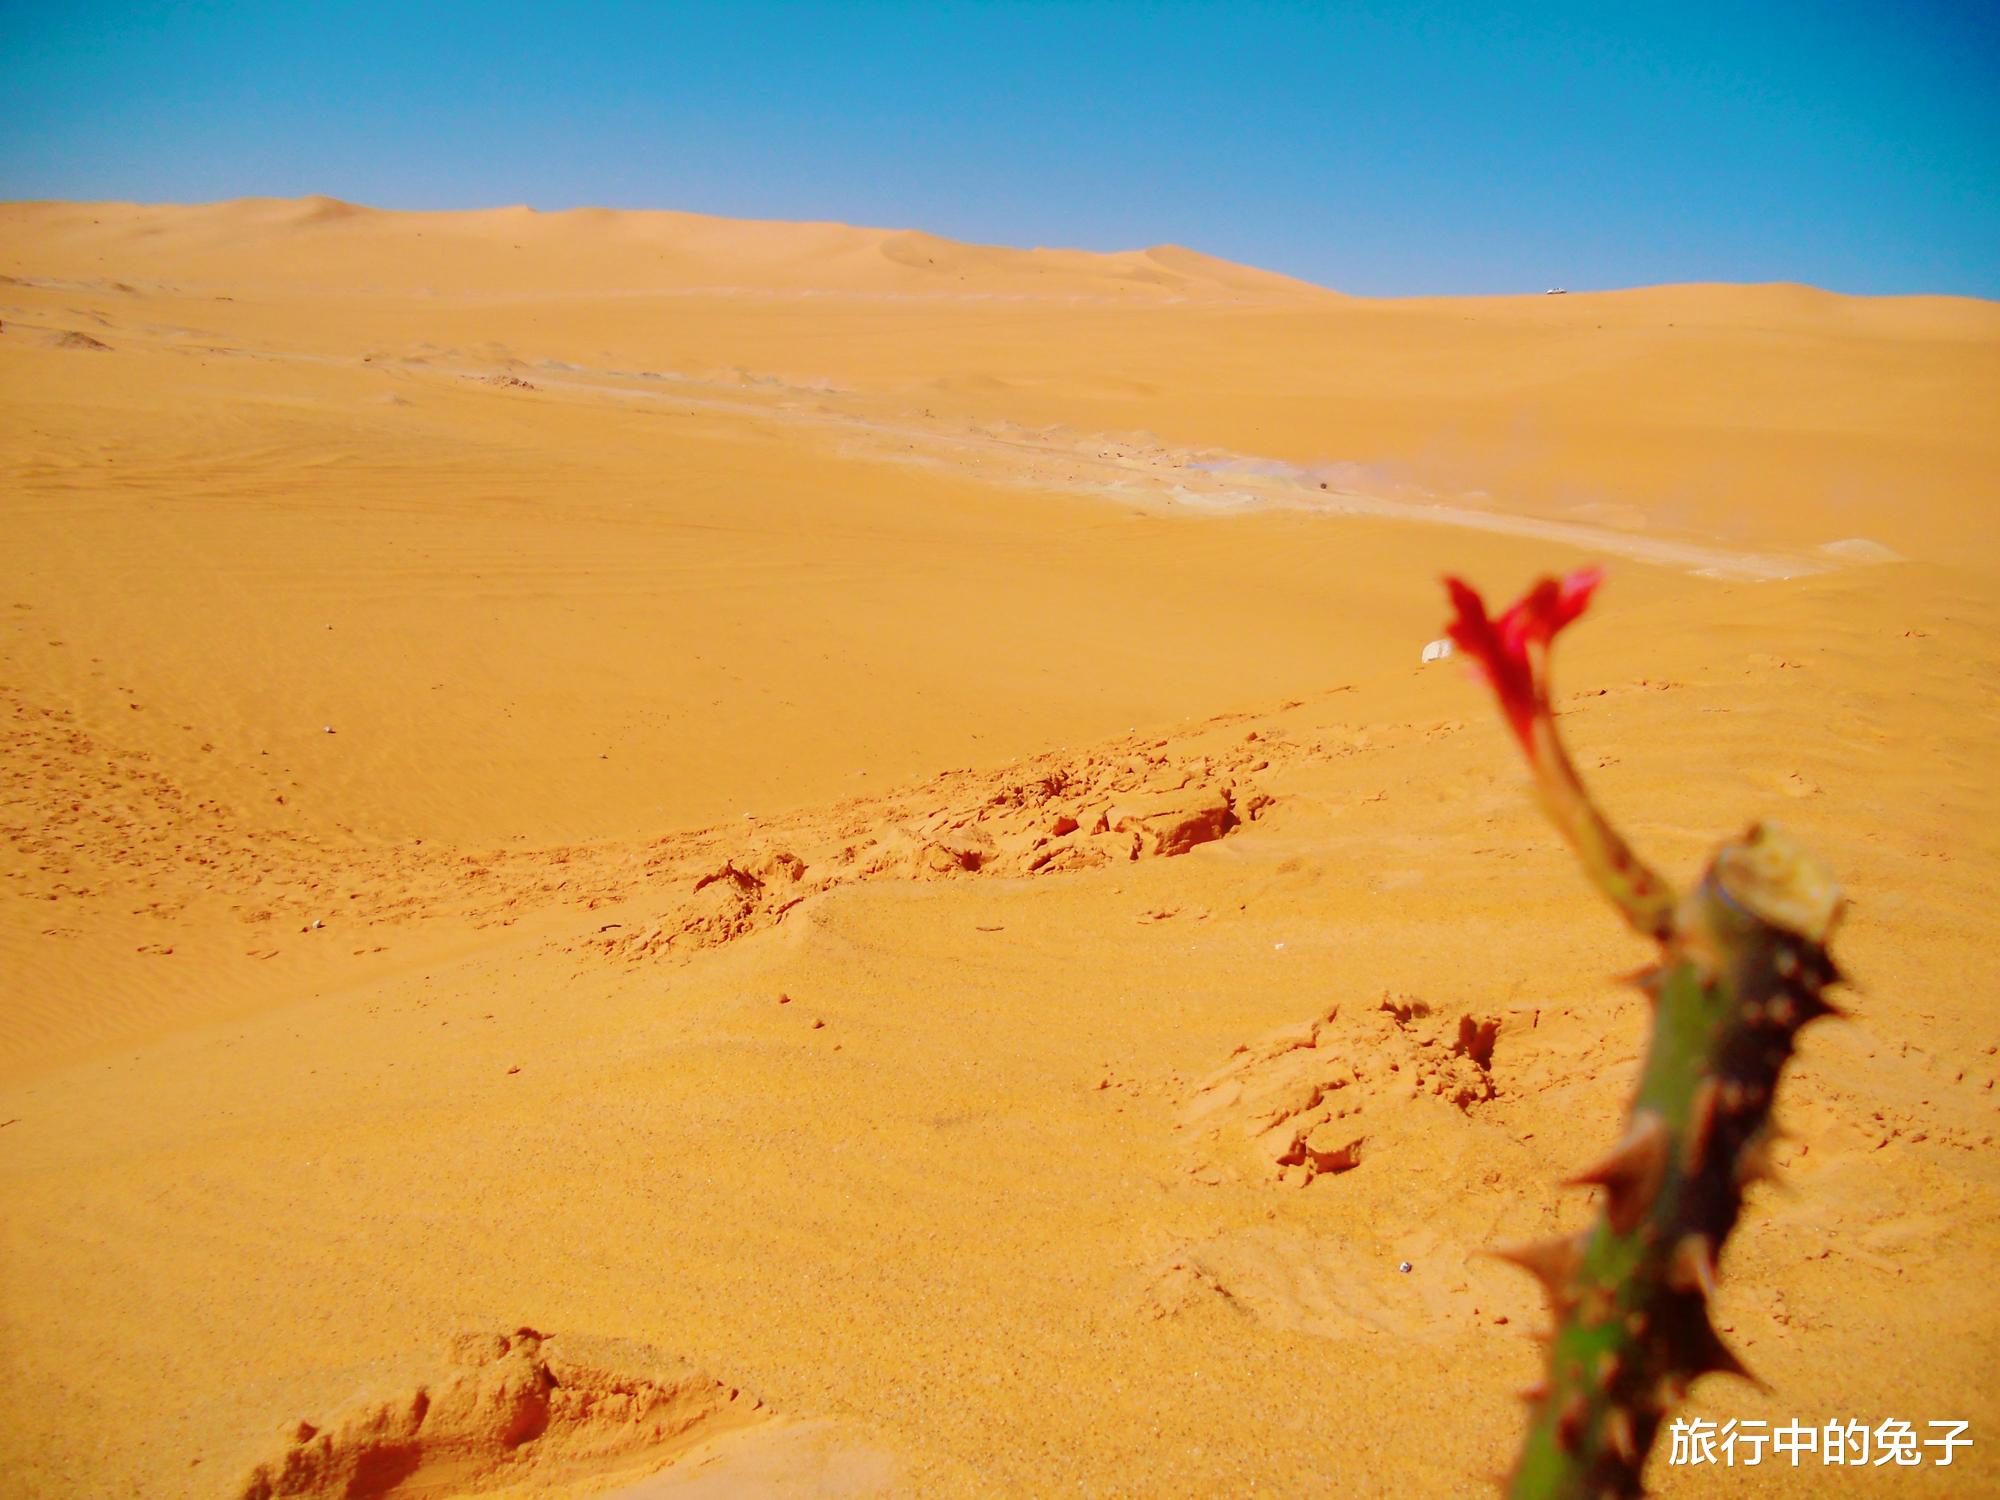 撒哈拉沙漠 撒哈拉的沙子平均深度为150米，下面有些什么？